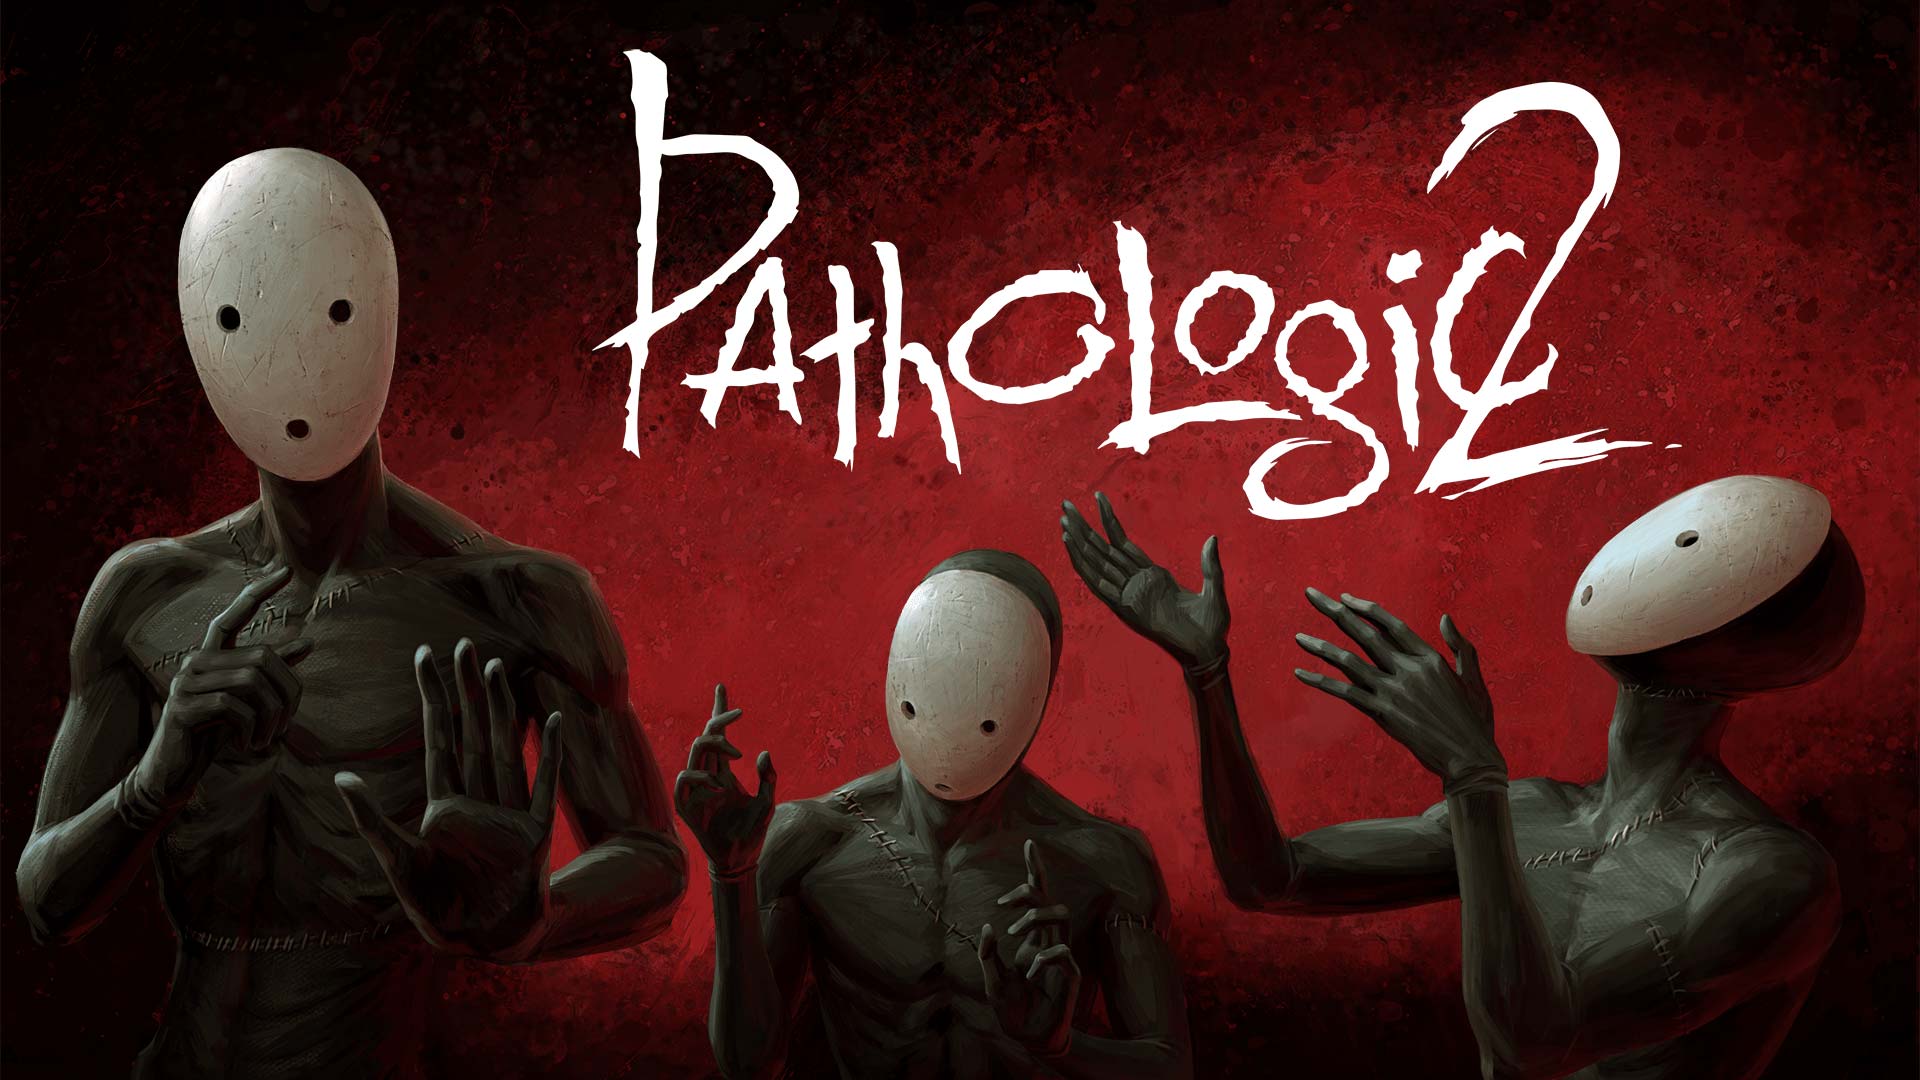 شخصیت های بازی Pathologic 2 